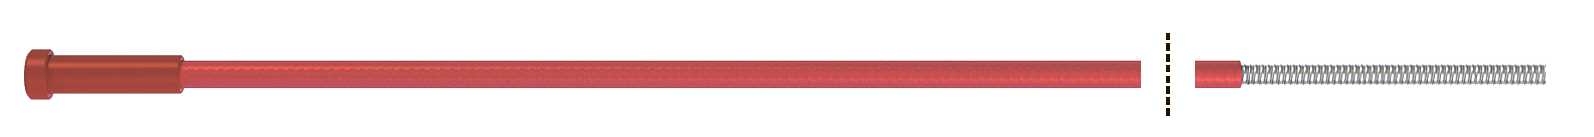 Fubag Канал направляющий 4.40 м диам. 1.0-1.2_сталь_красный (1 шт.) FB.SLR-40 MAG фото, изображение